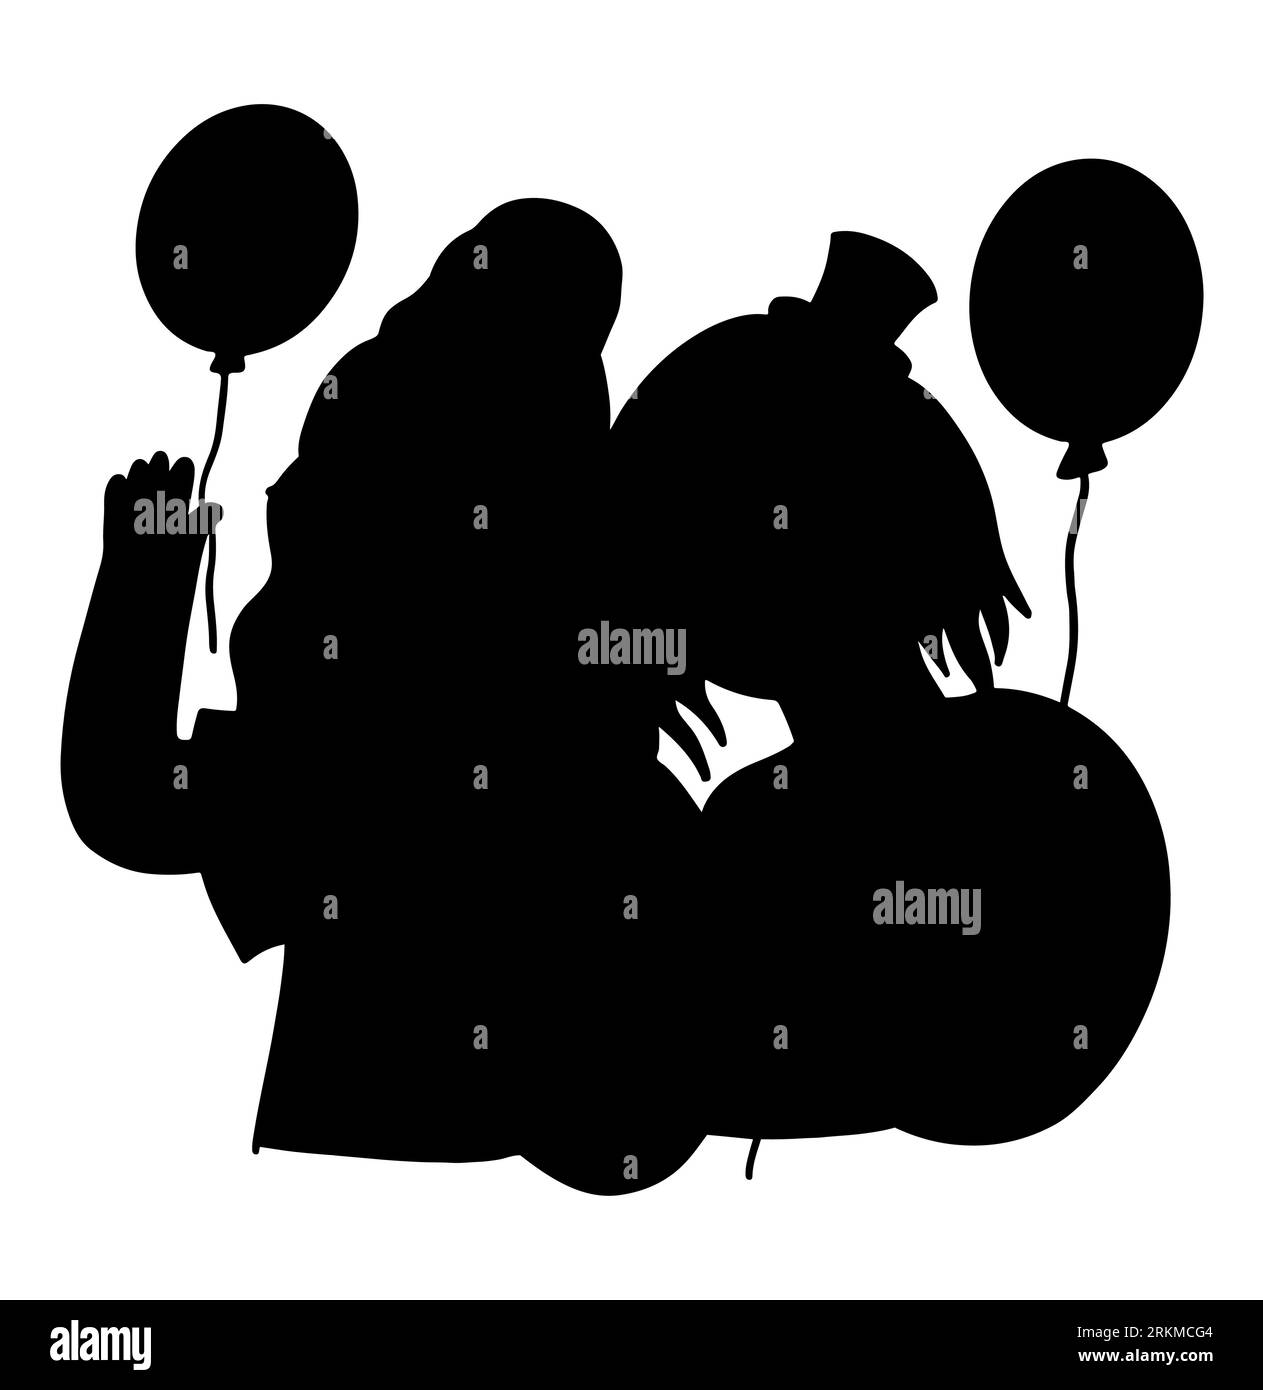 Schwarze Silhouette von zwei Freundinnen, die miteinander Spaß haben, Mädchen, die Ballons in den Händen halten, Frauen, die Spaß haben, Vektor isoliert auf weiß Stock Vektor